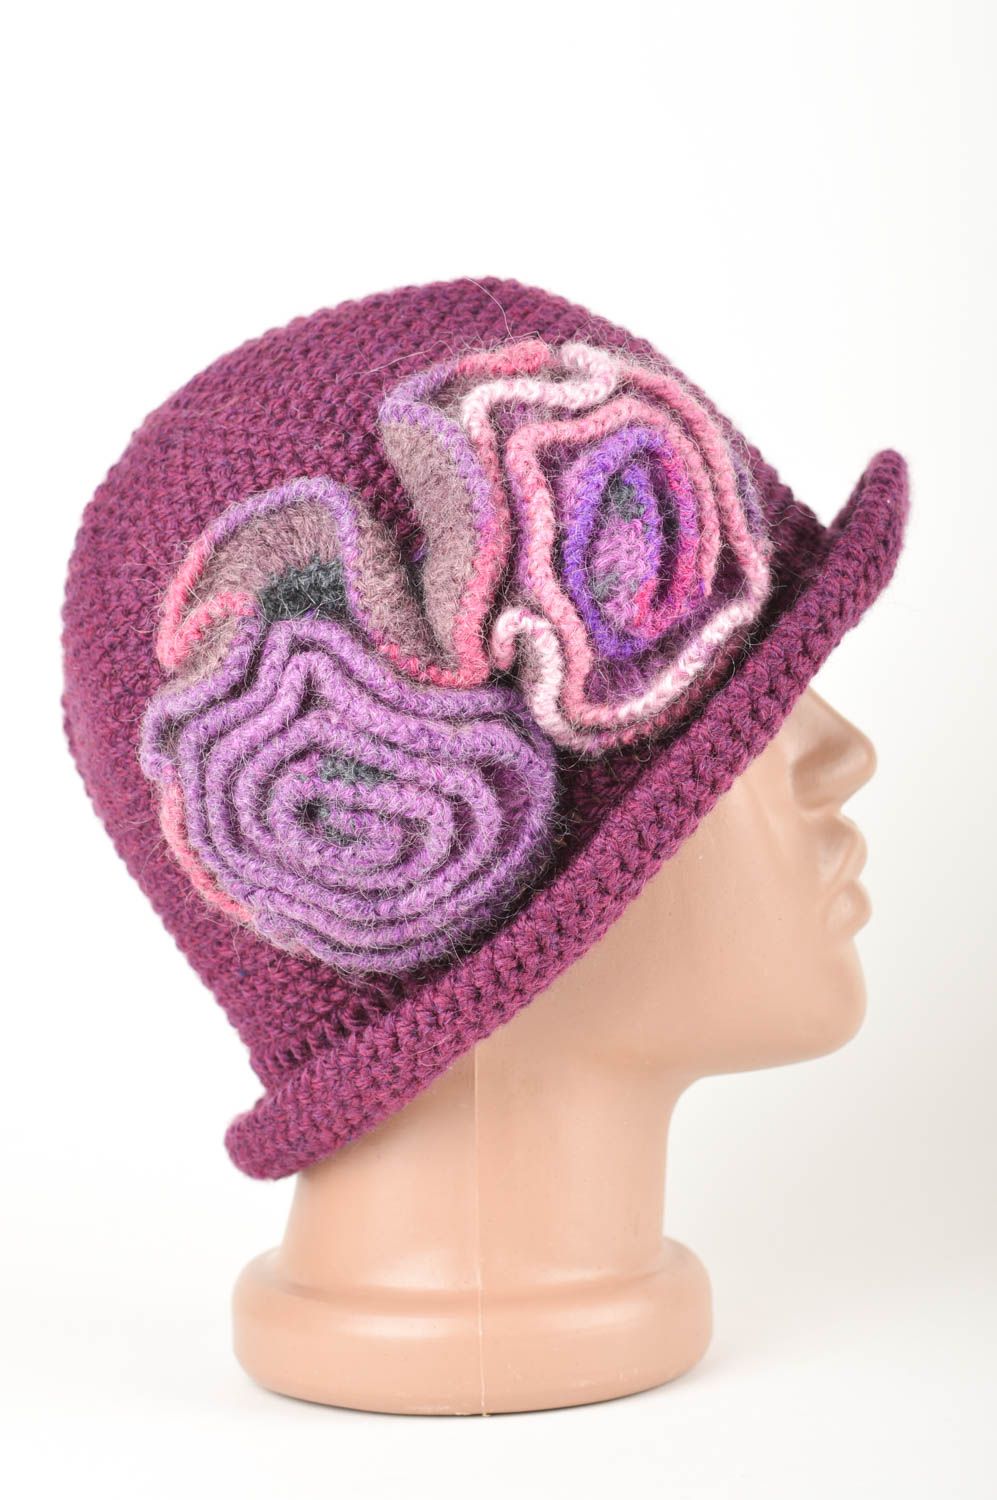 Gehäkelte Mütze schöne handmade Mütze für Frau modisches Accessoire in Lila foto 3